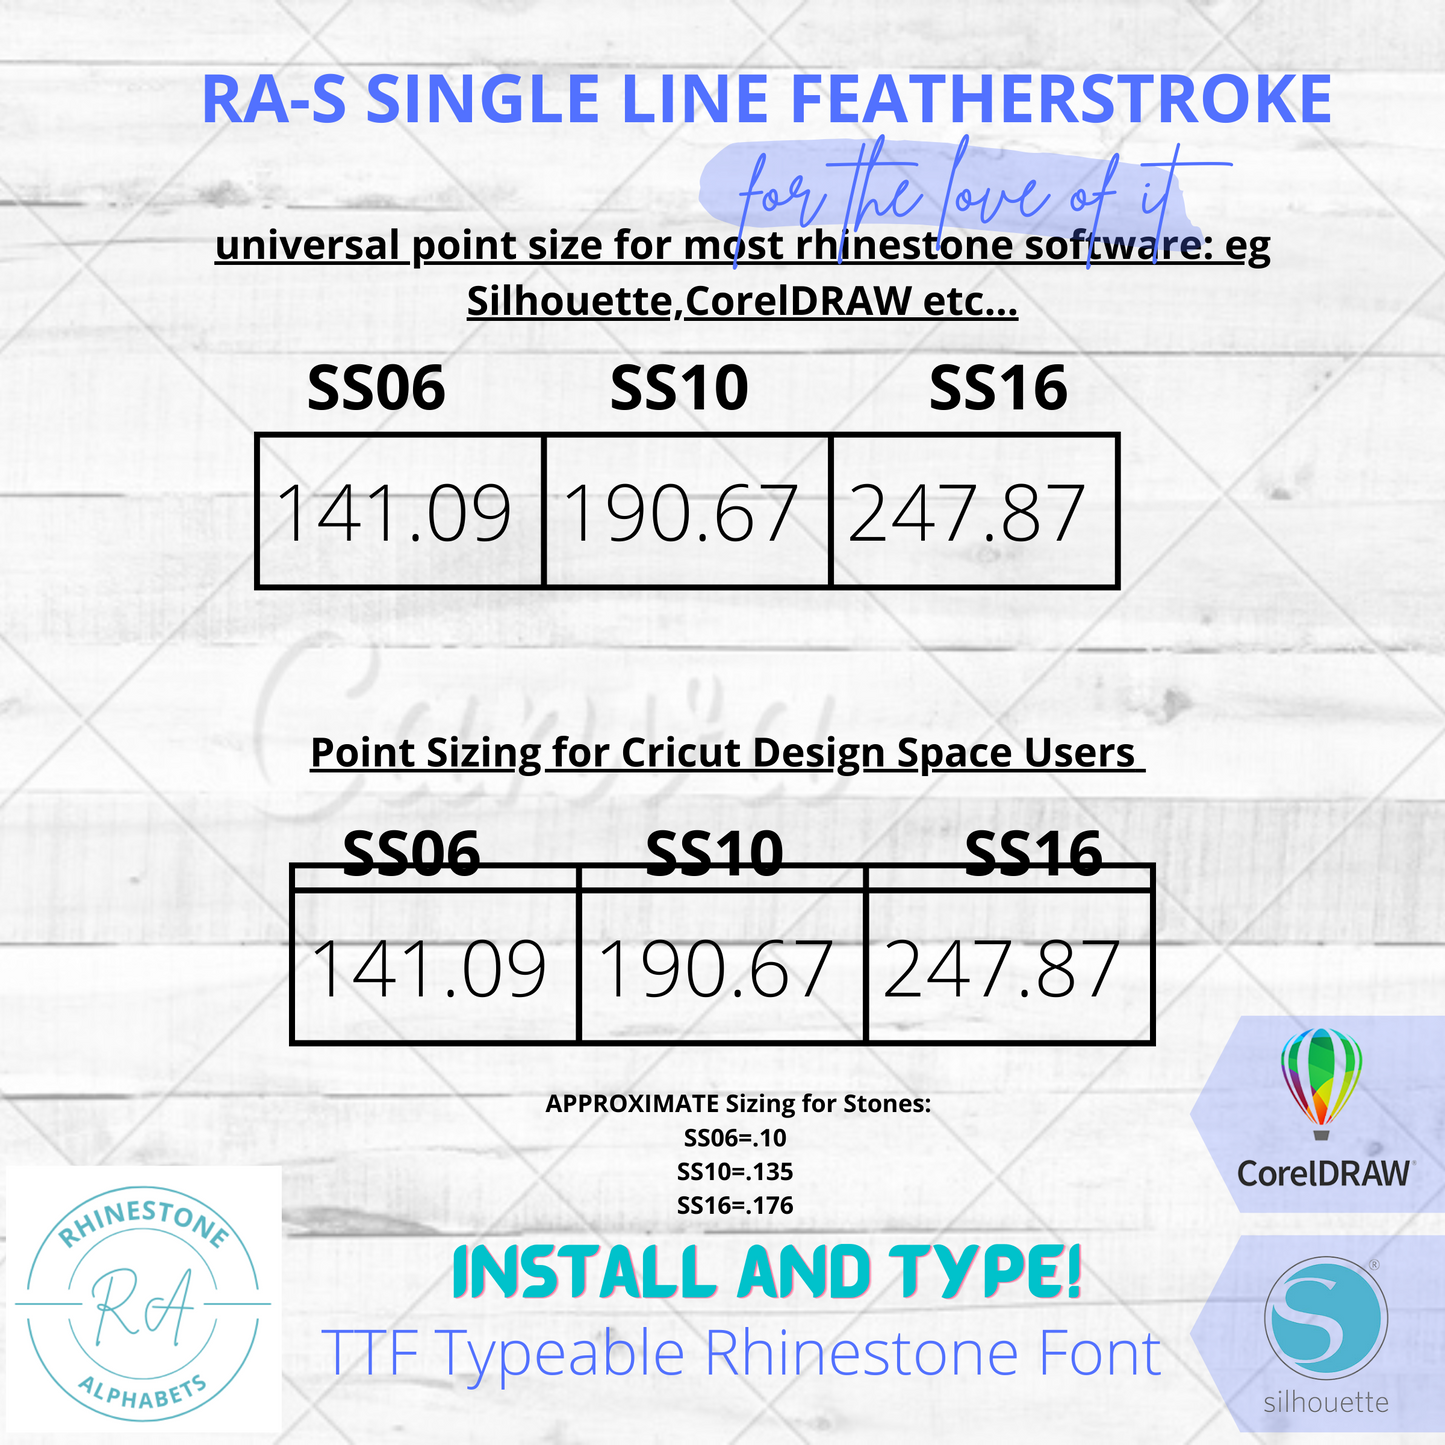 RA-S Singleline Featherstroke